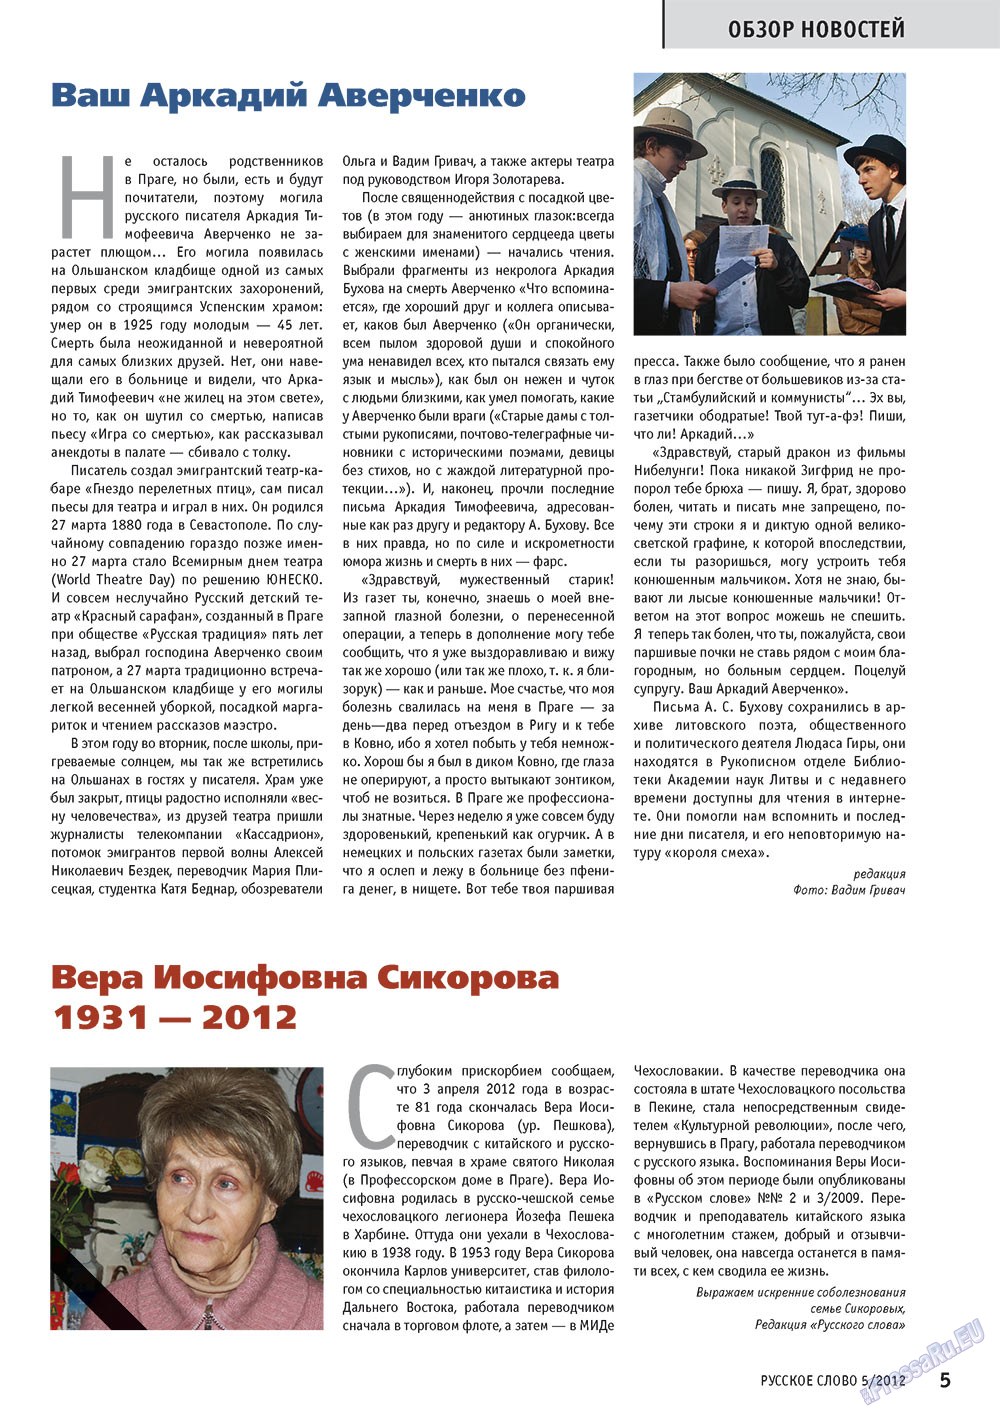 Русское слово (журнал). 2012 год, номер 5, стр. 5